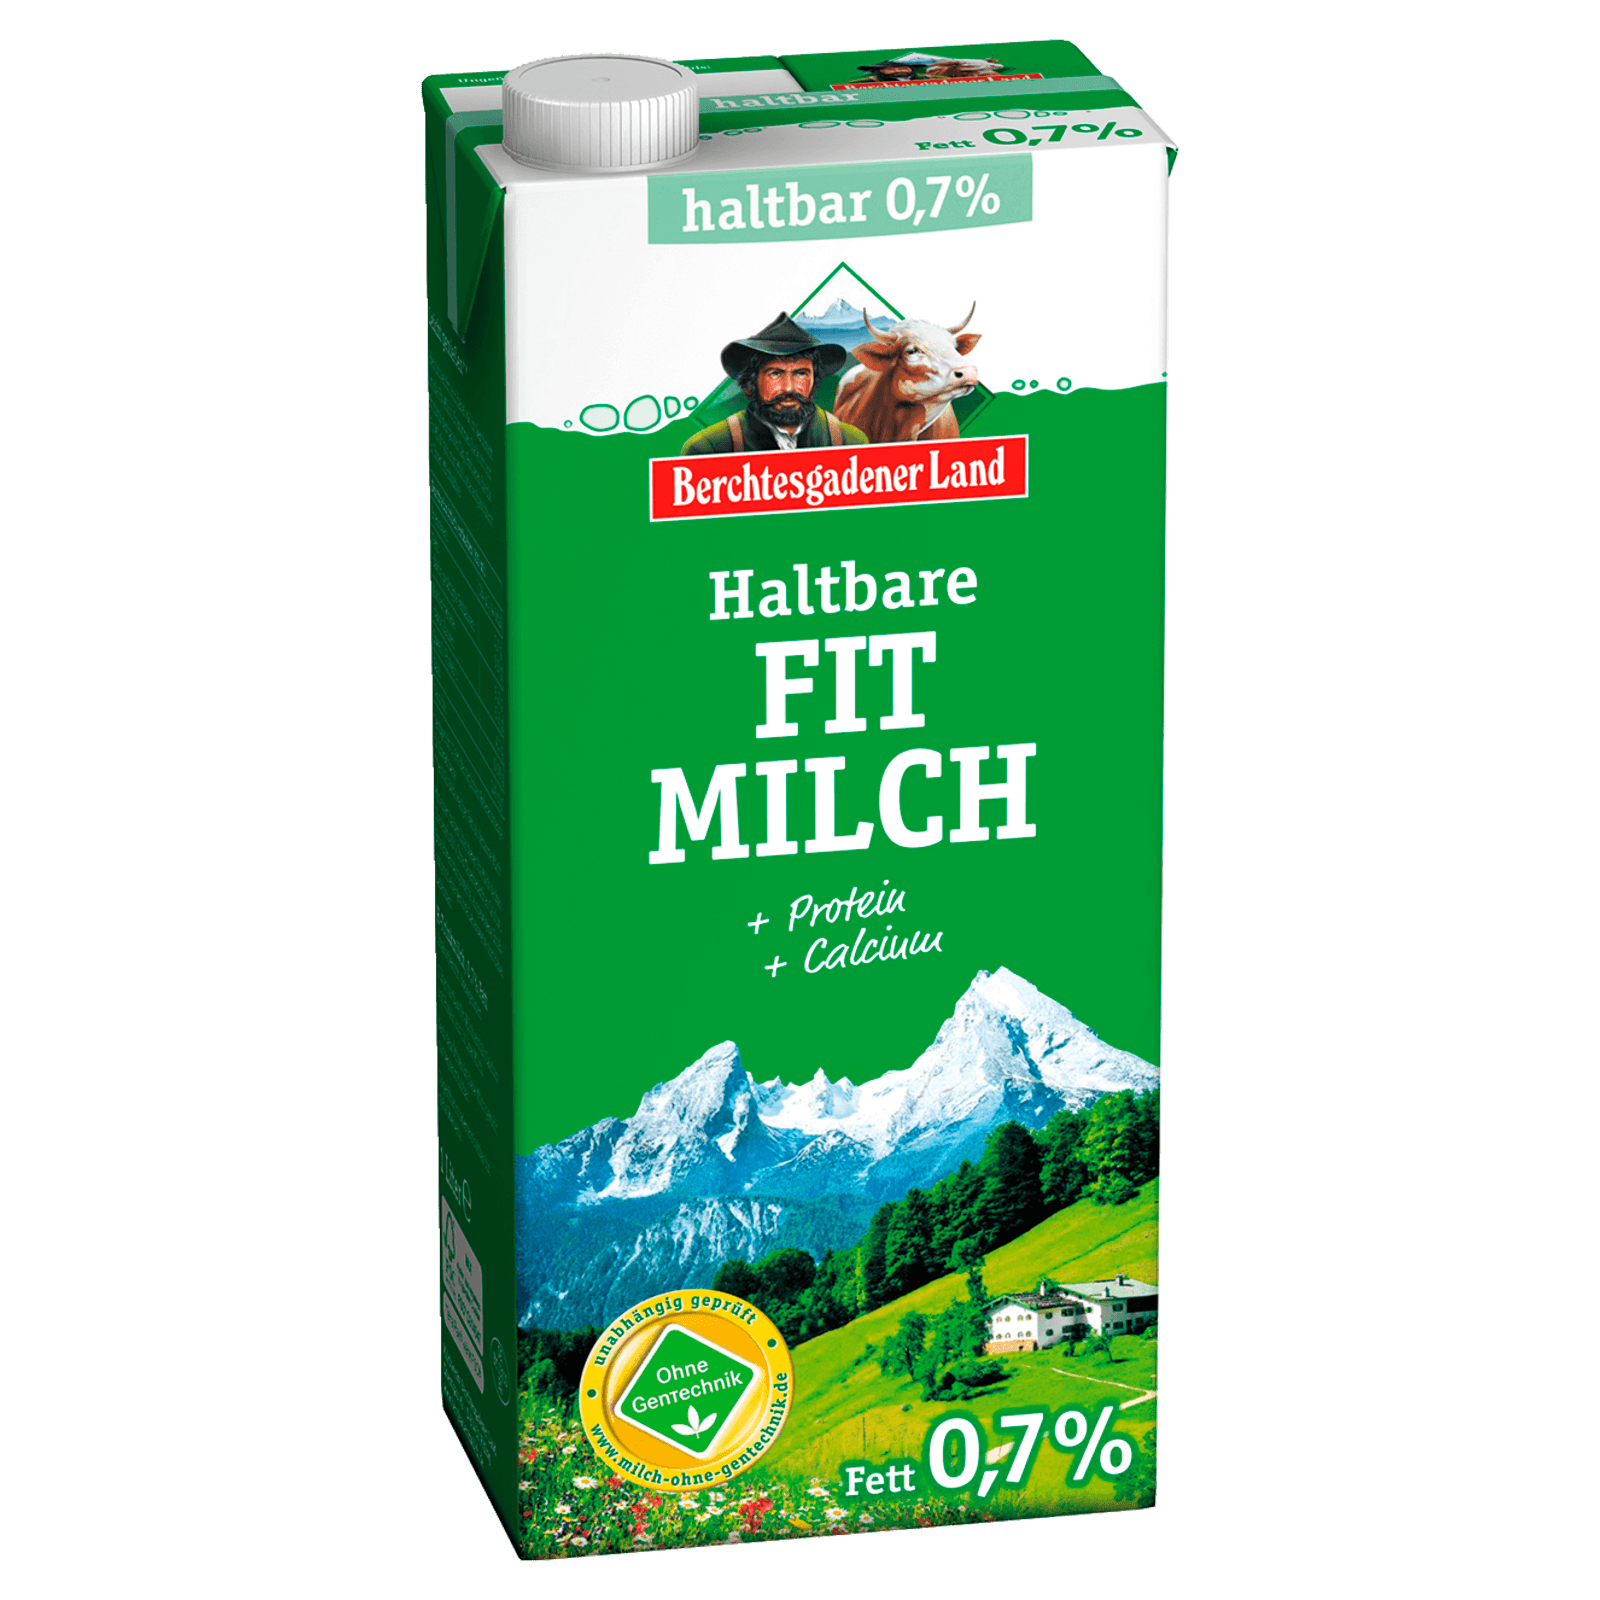 Berchtesgadener Land Haltbare Bergbauern Frühstücksmilch 0,7% 1l  für 1.39 EUR